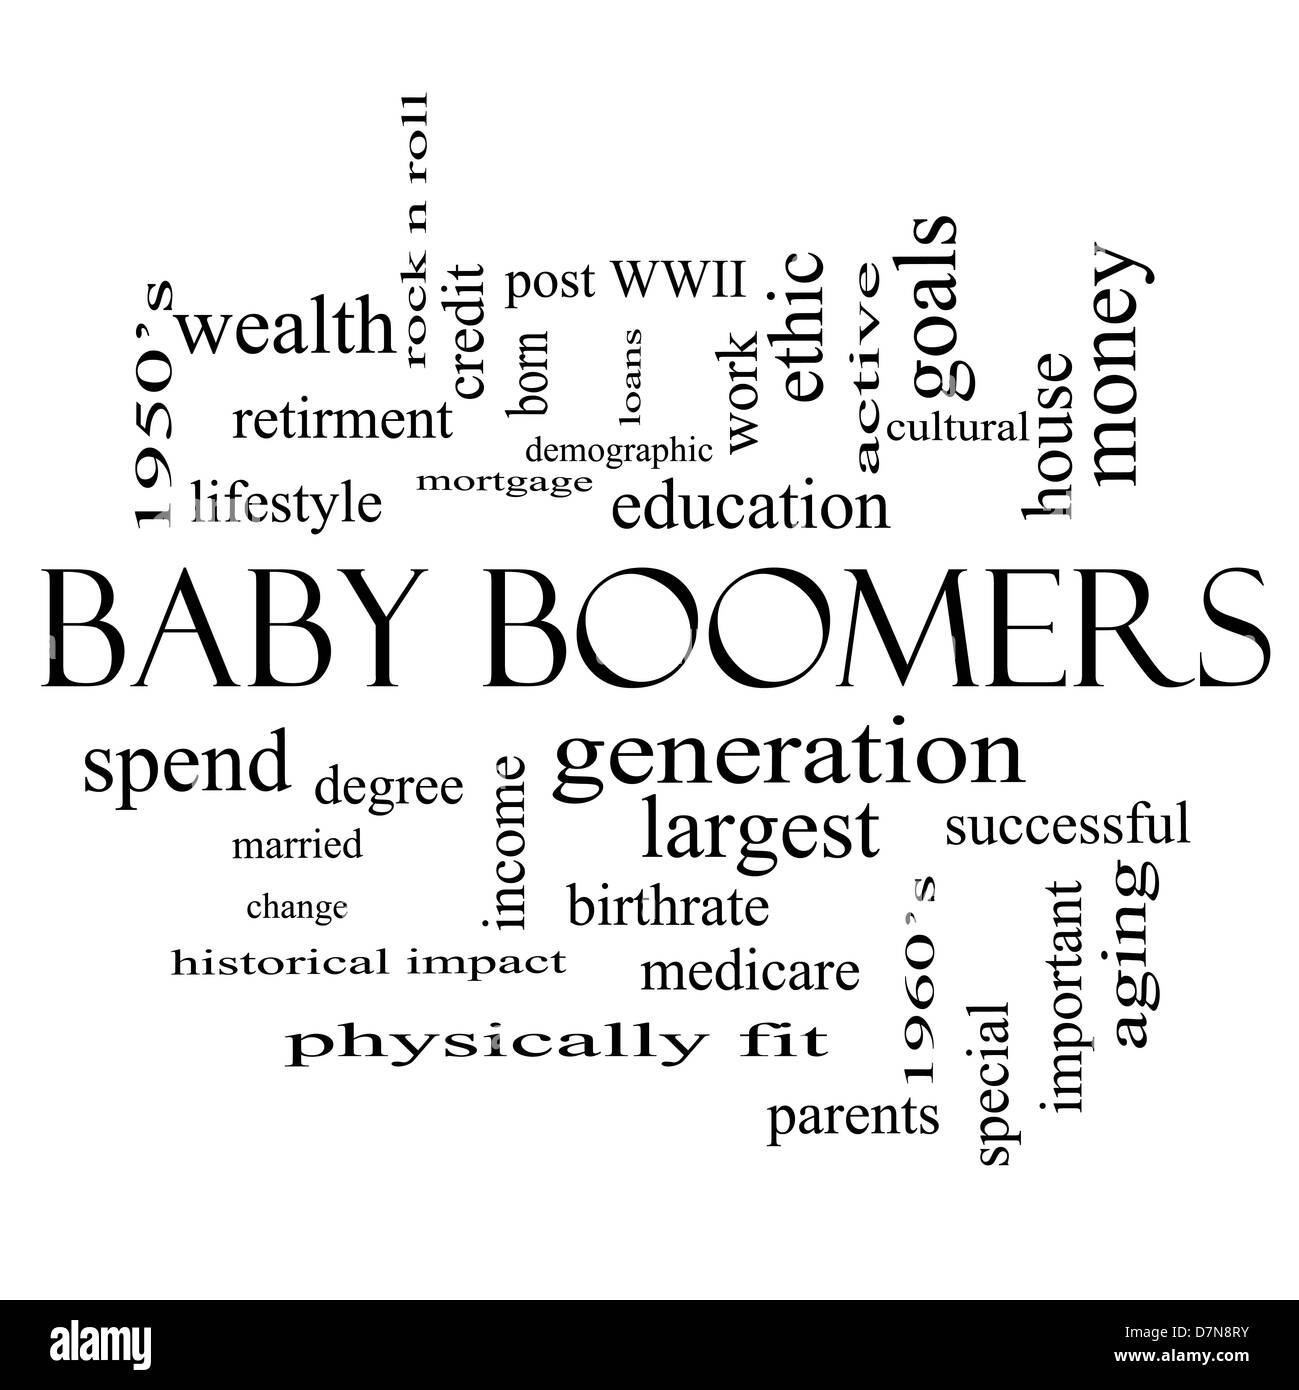 Baby-boomers mot Concept Cloud en noir et blanc avec beaucoup de termes comme génération, plus grand, démographique et plus encore. Banque D'Images